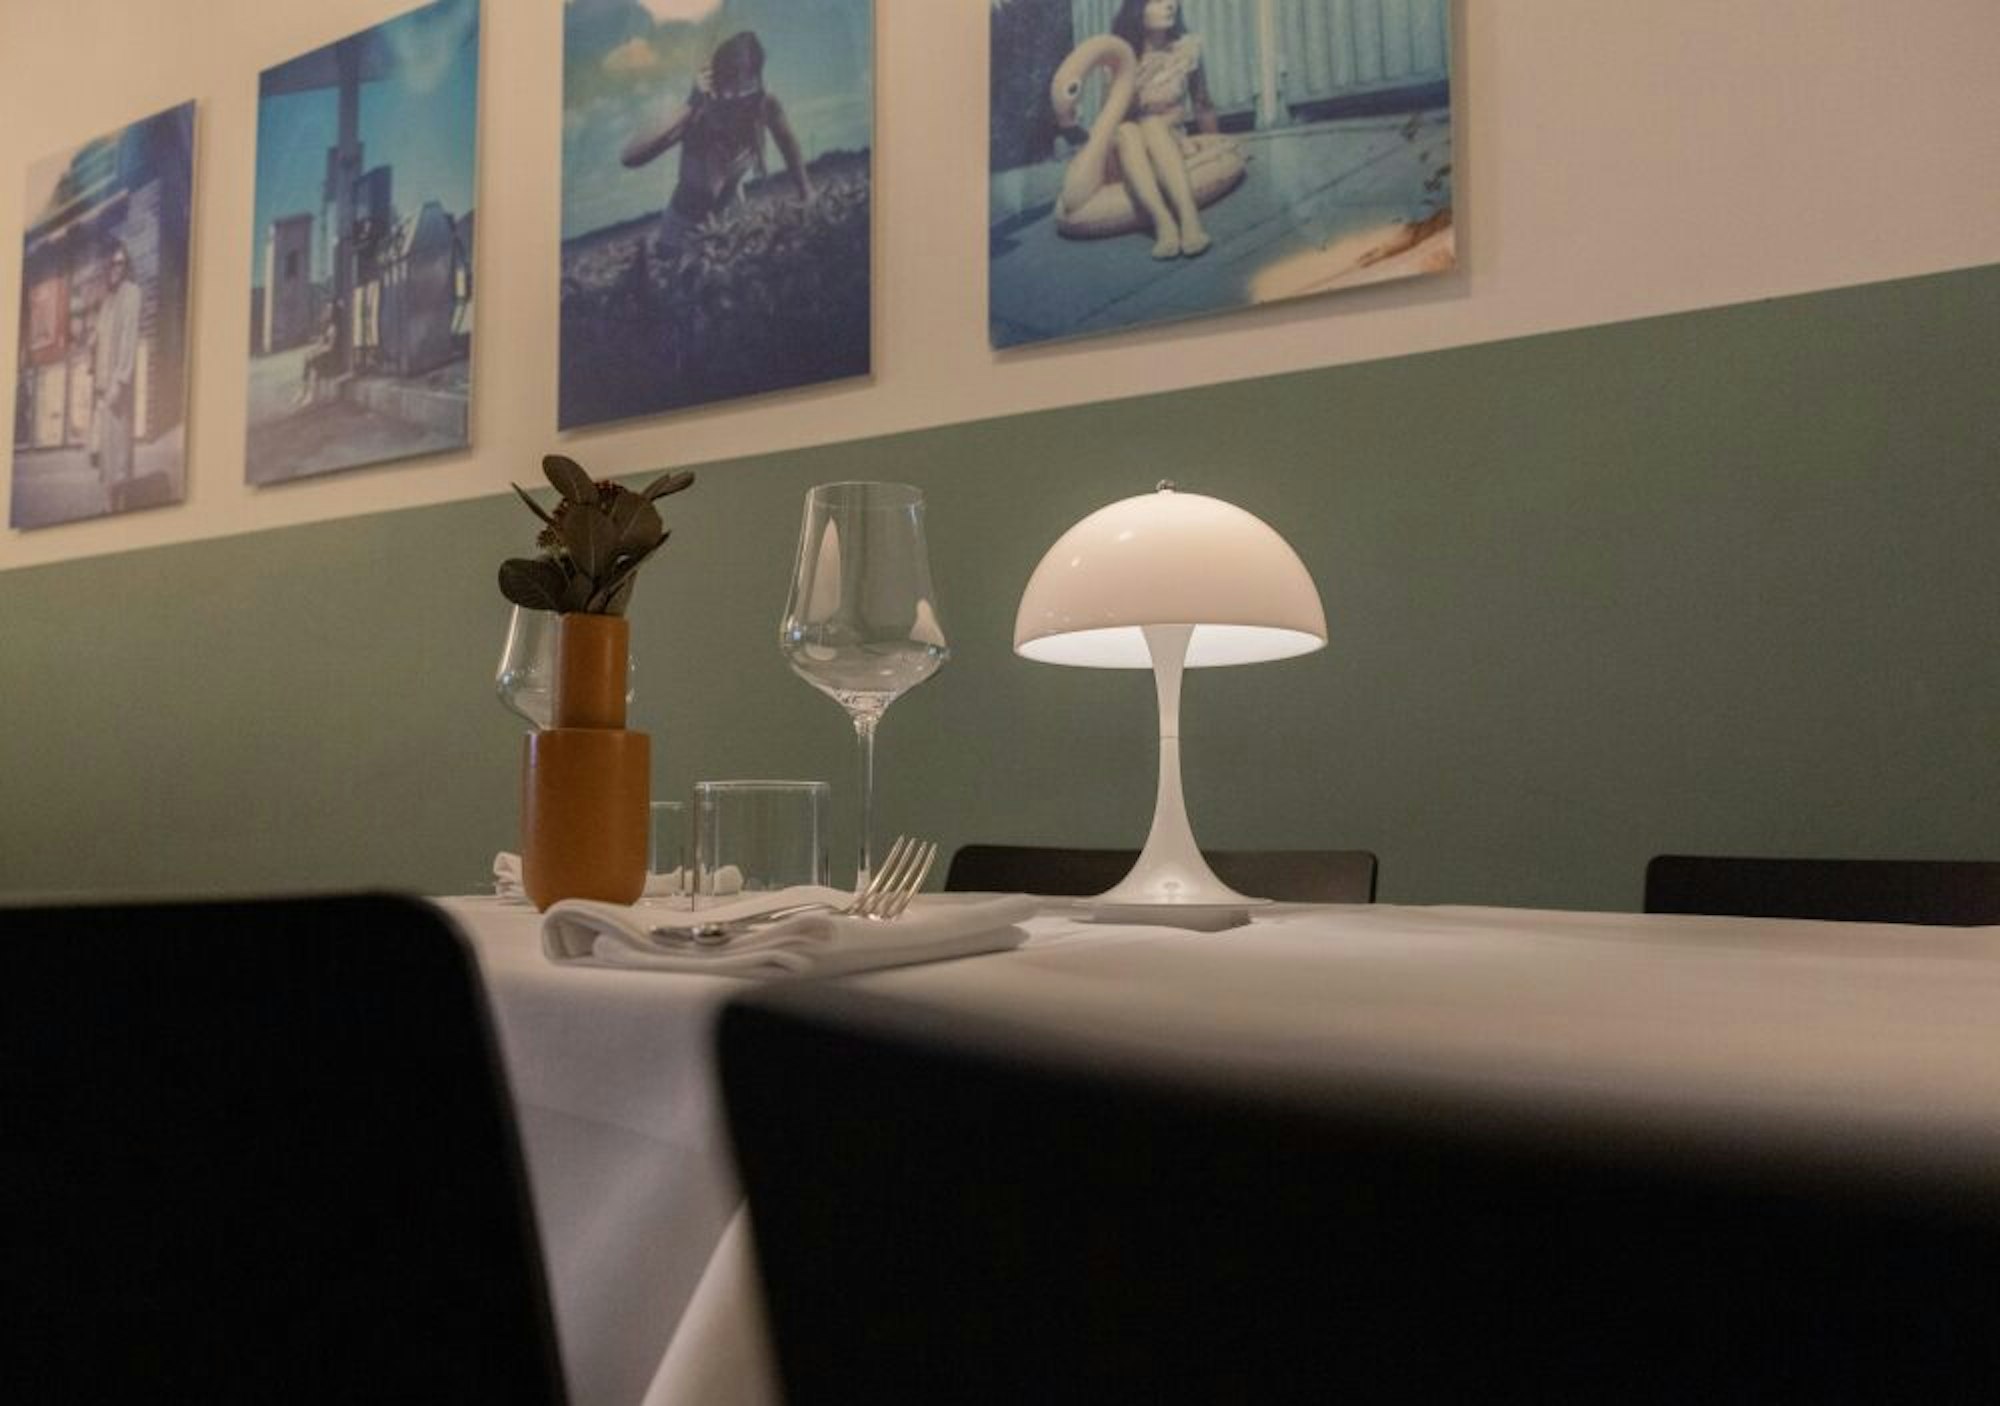 Schlicht und schnörkellos: Ein Tisch im Restaurant Pottkind auf der Darmstädter Straße. Die Tischdecke gibt es nur, weil zu Beginn kein Geld für schöne Tische übrig war.